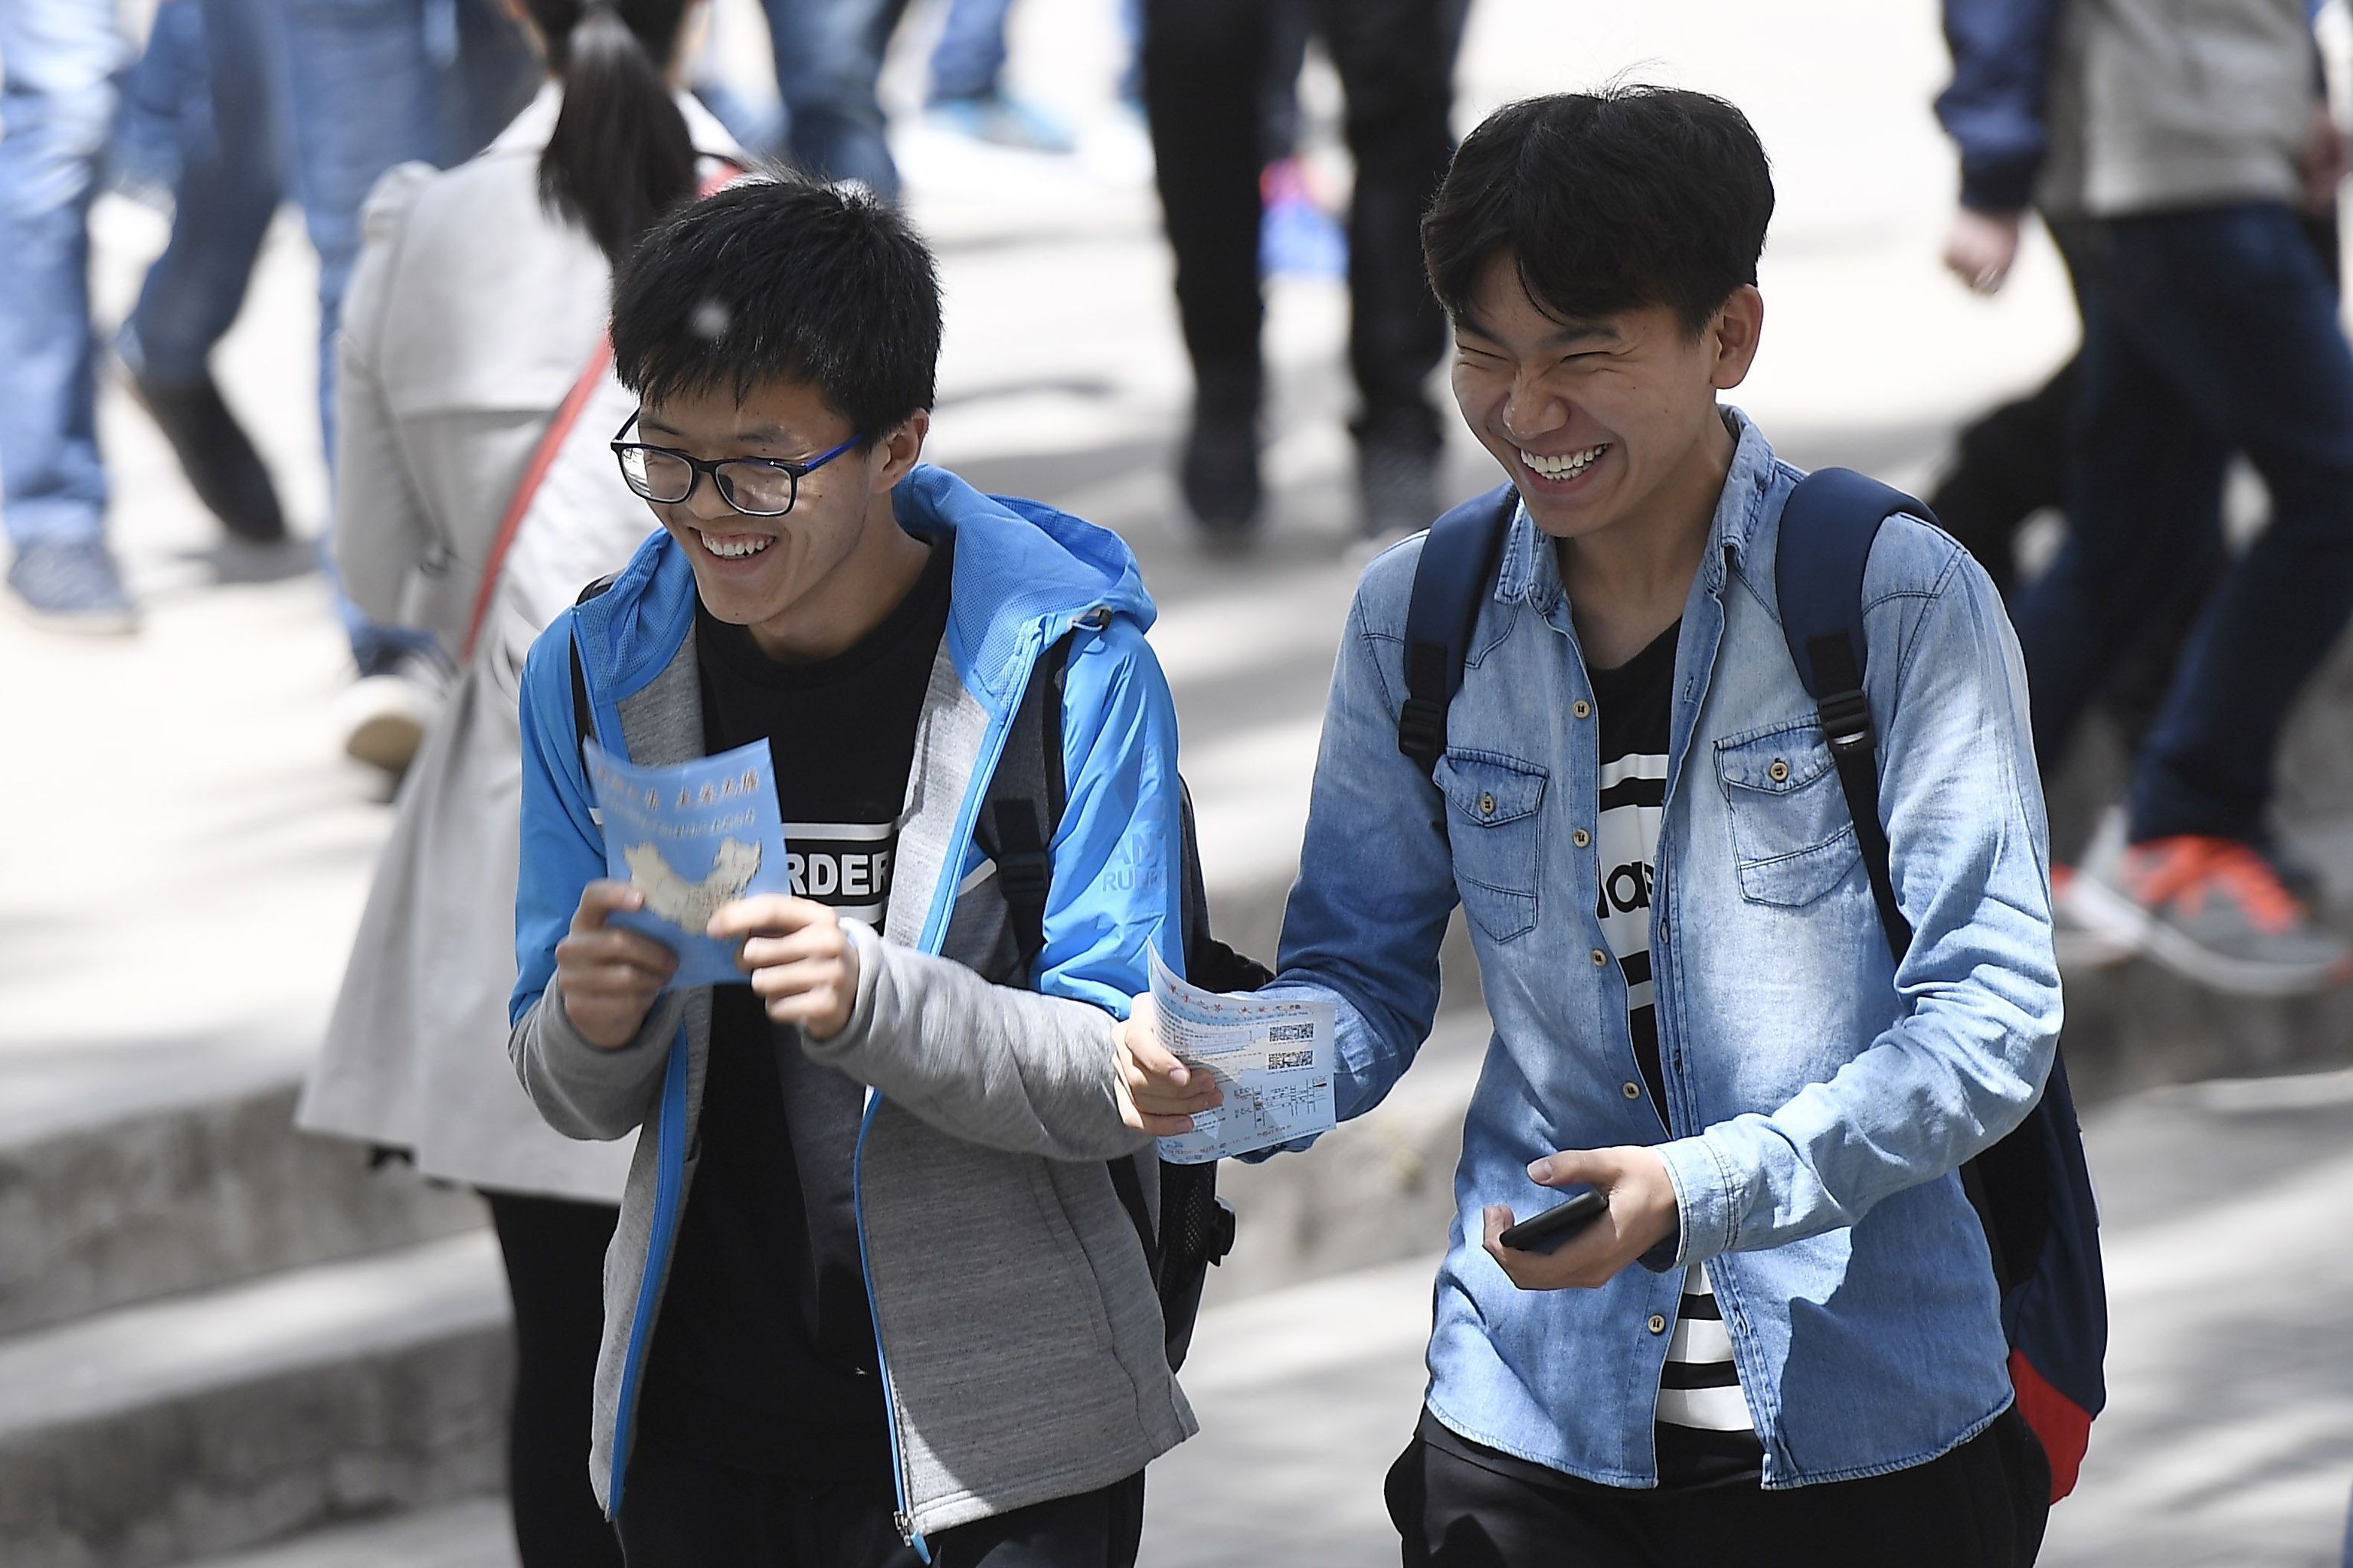 Voluntarios del banco de esperma de Shanxi reparten publicidad.